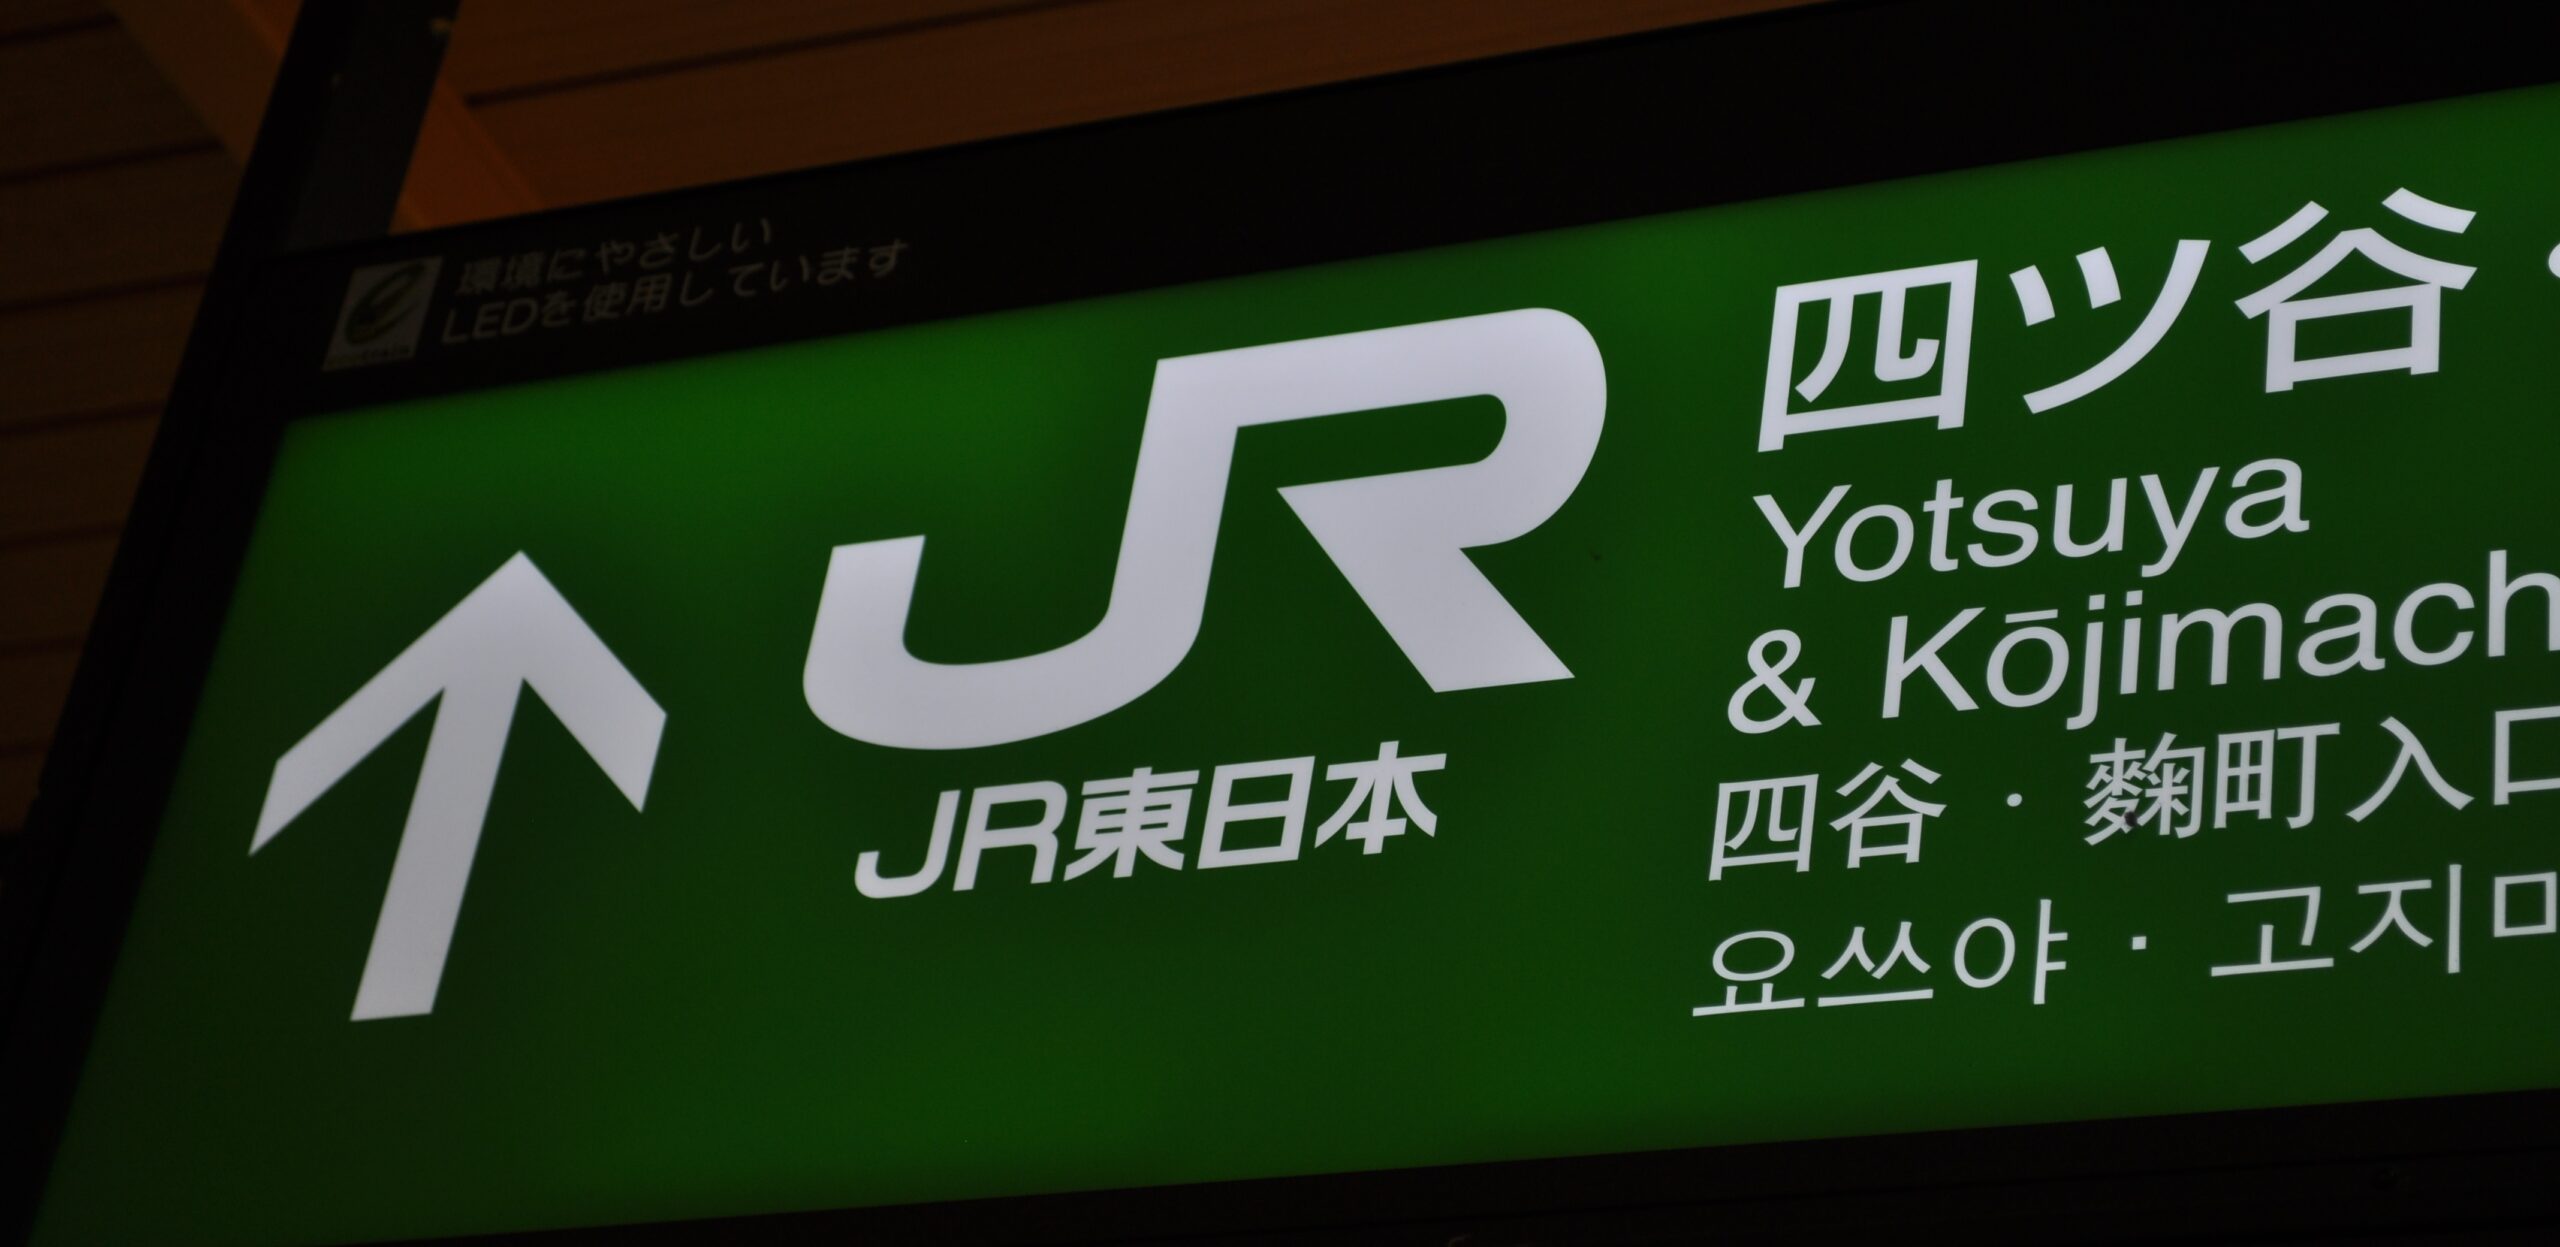 JR四ツ谷駅からつぼ治療院までの道順